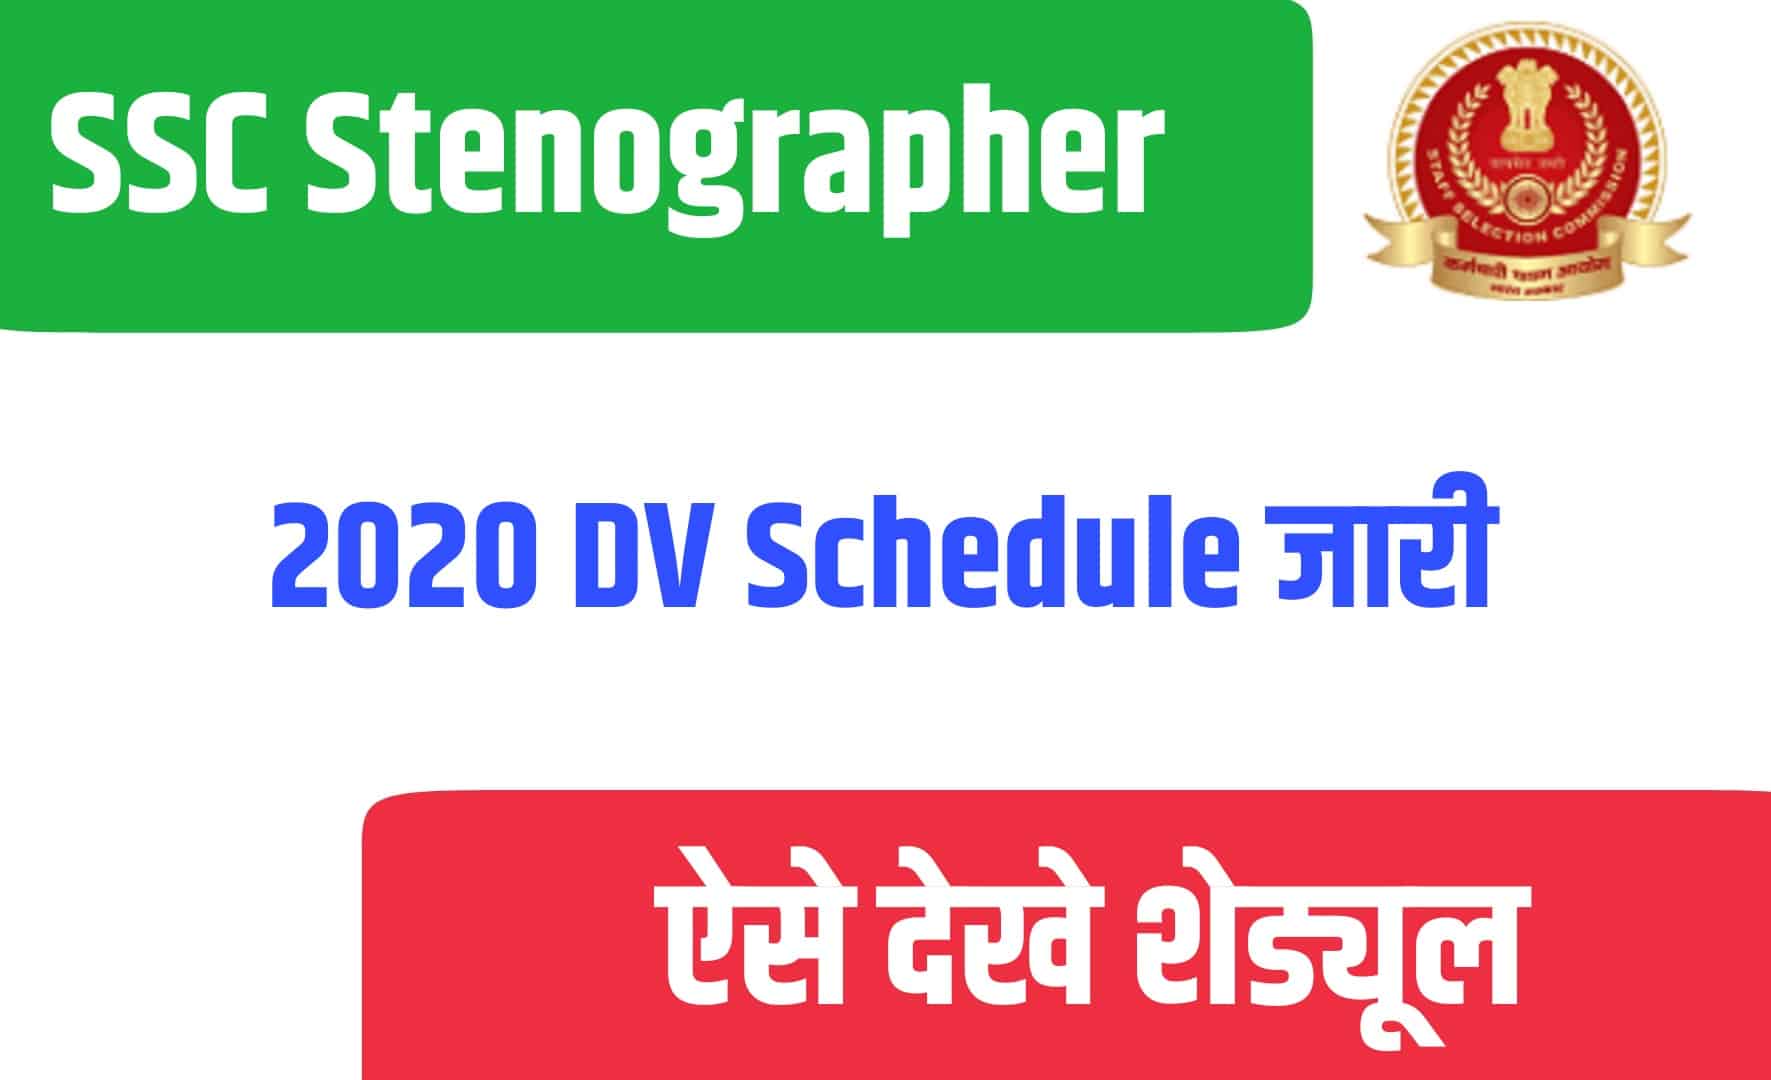 SSC Stenographer 2020 DV Schedule | एसएससी स्टेनोग्राफर दस्तावेज सत्यापन परीक्षा नोटिस जारी